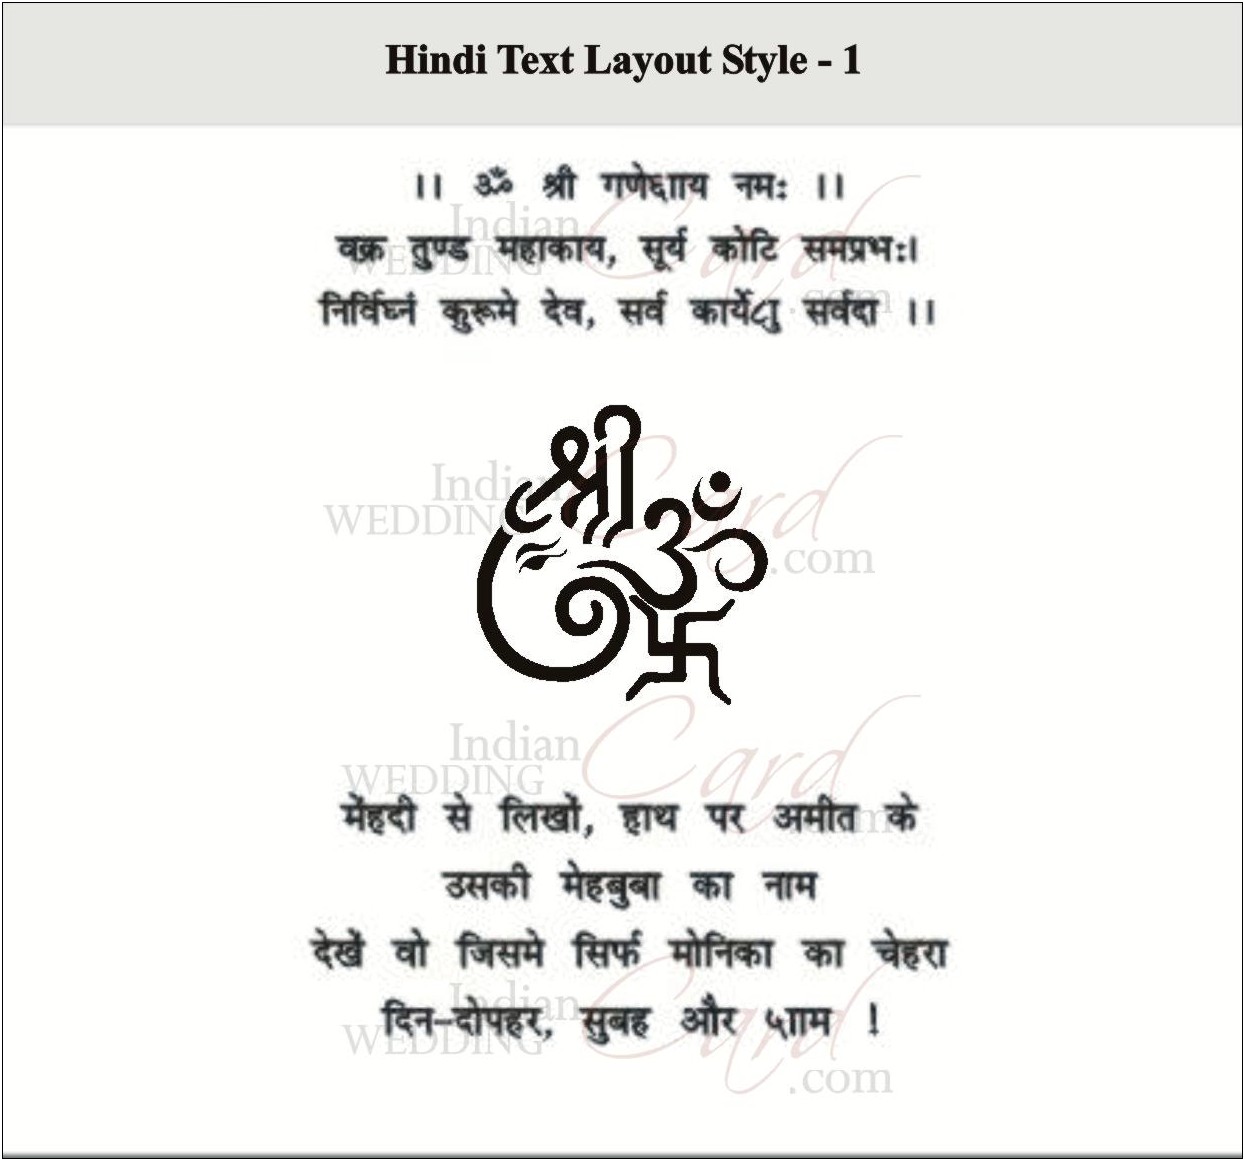 Hindu Wedding Invitations Wording In Hindi